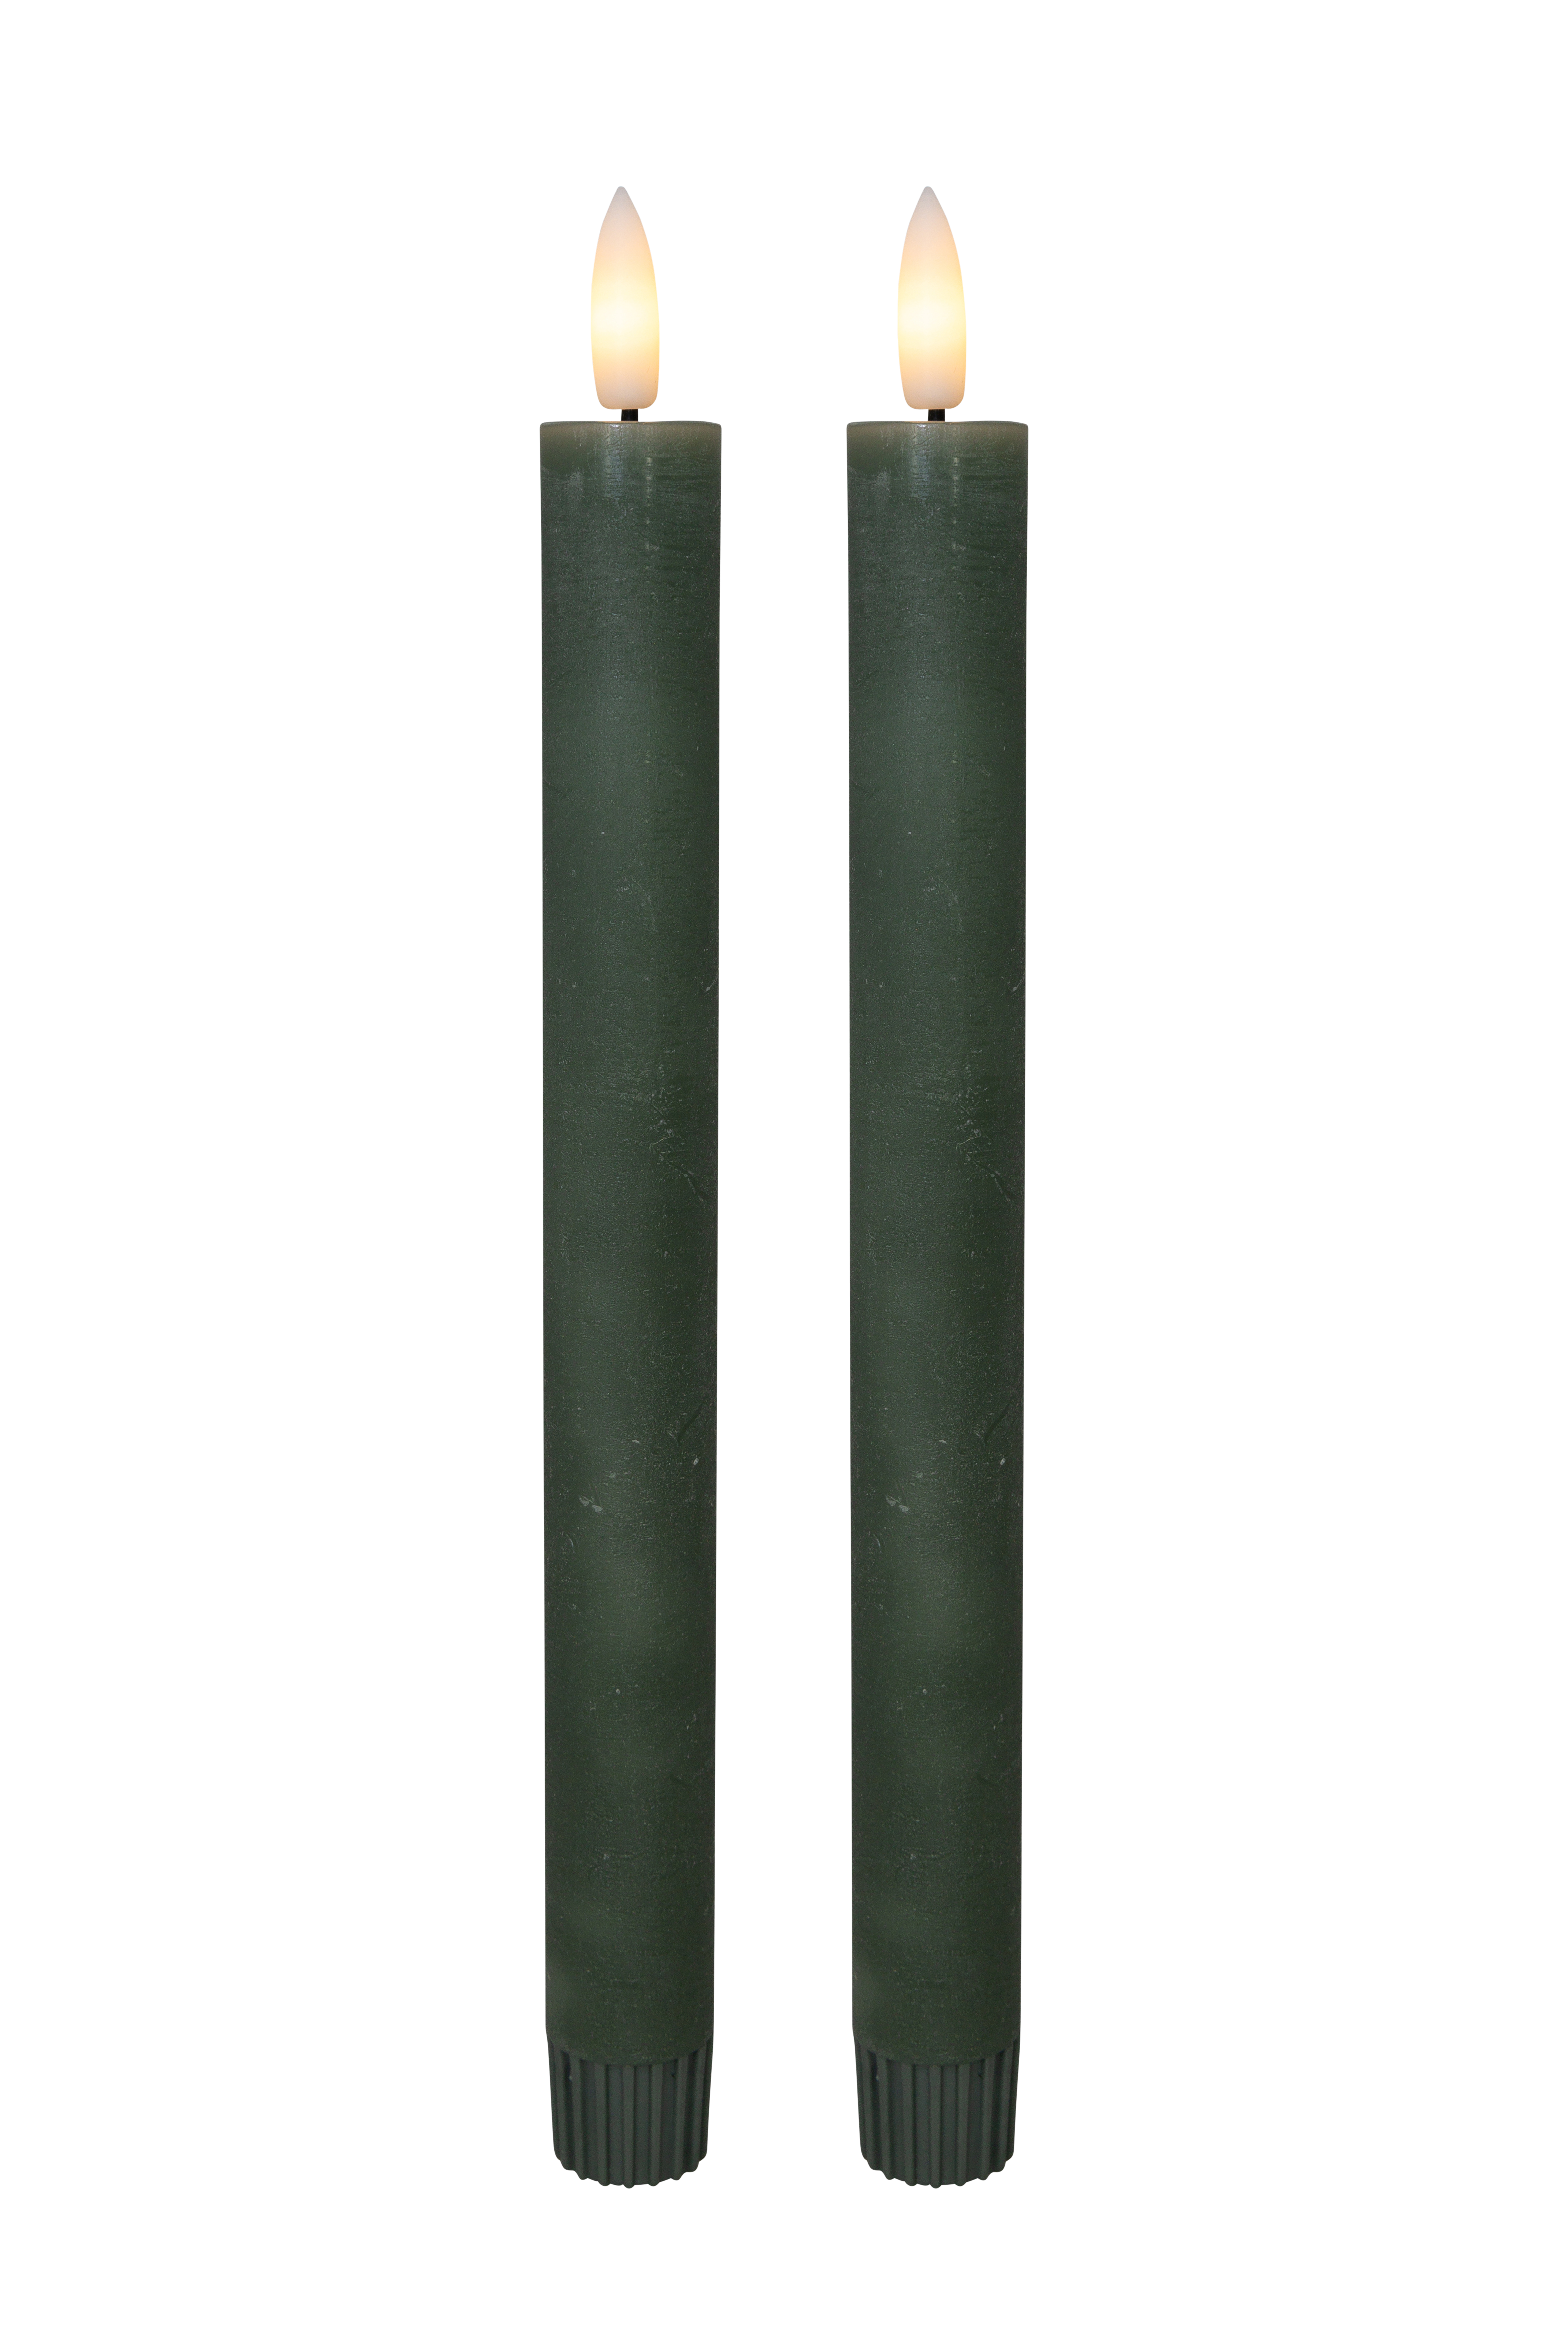 Cozzy kronelys, 3D flamme, 22,2 cm, grøn, 2 stk (bruges med fjernbetjening)